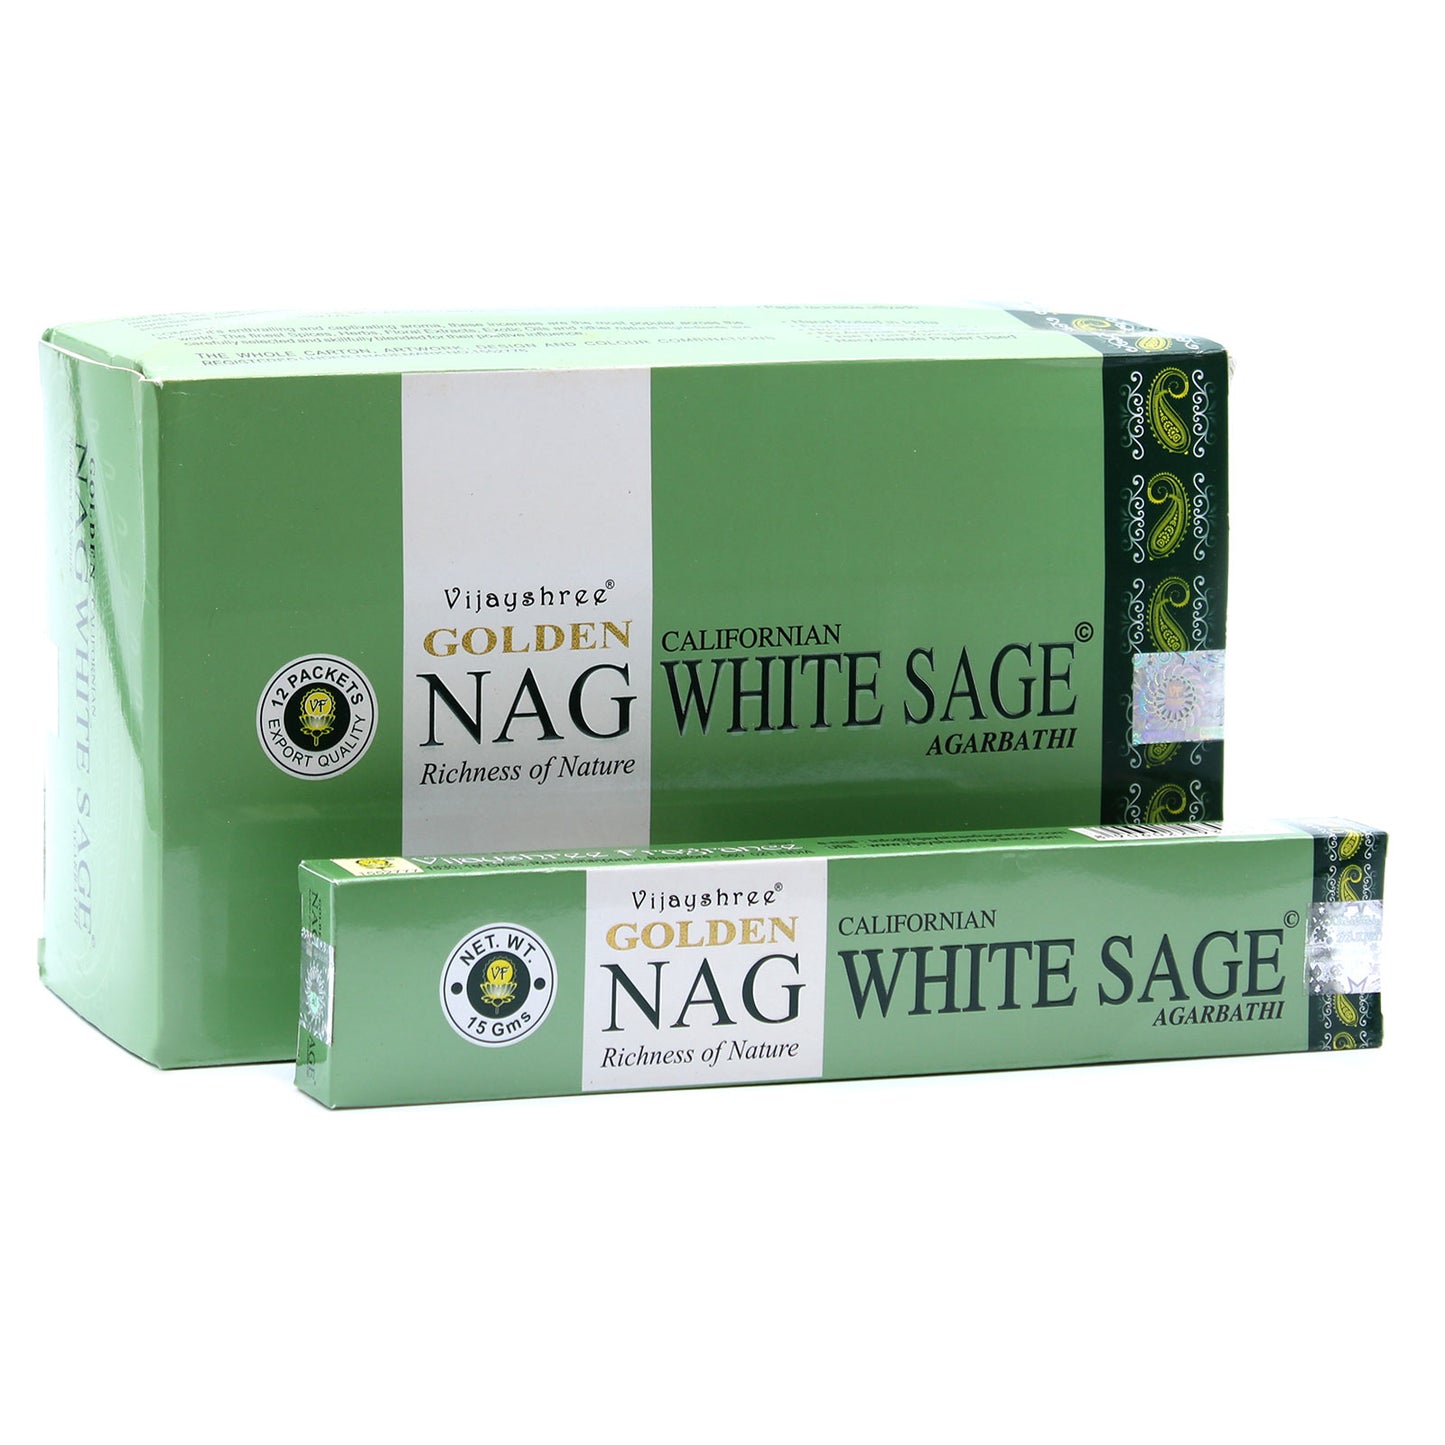 Golden Nag White Sage Incense - Box of 12 Packs 15g - NEW421